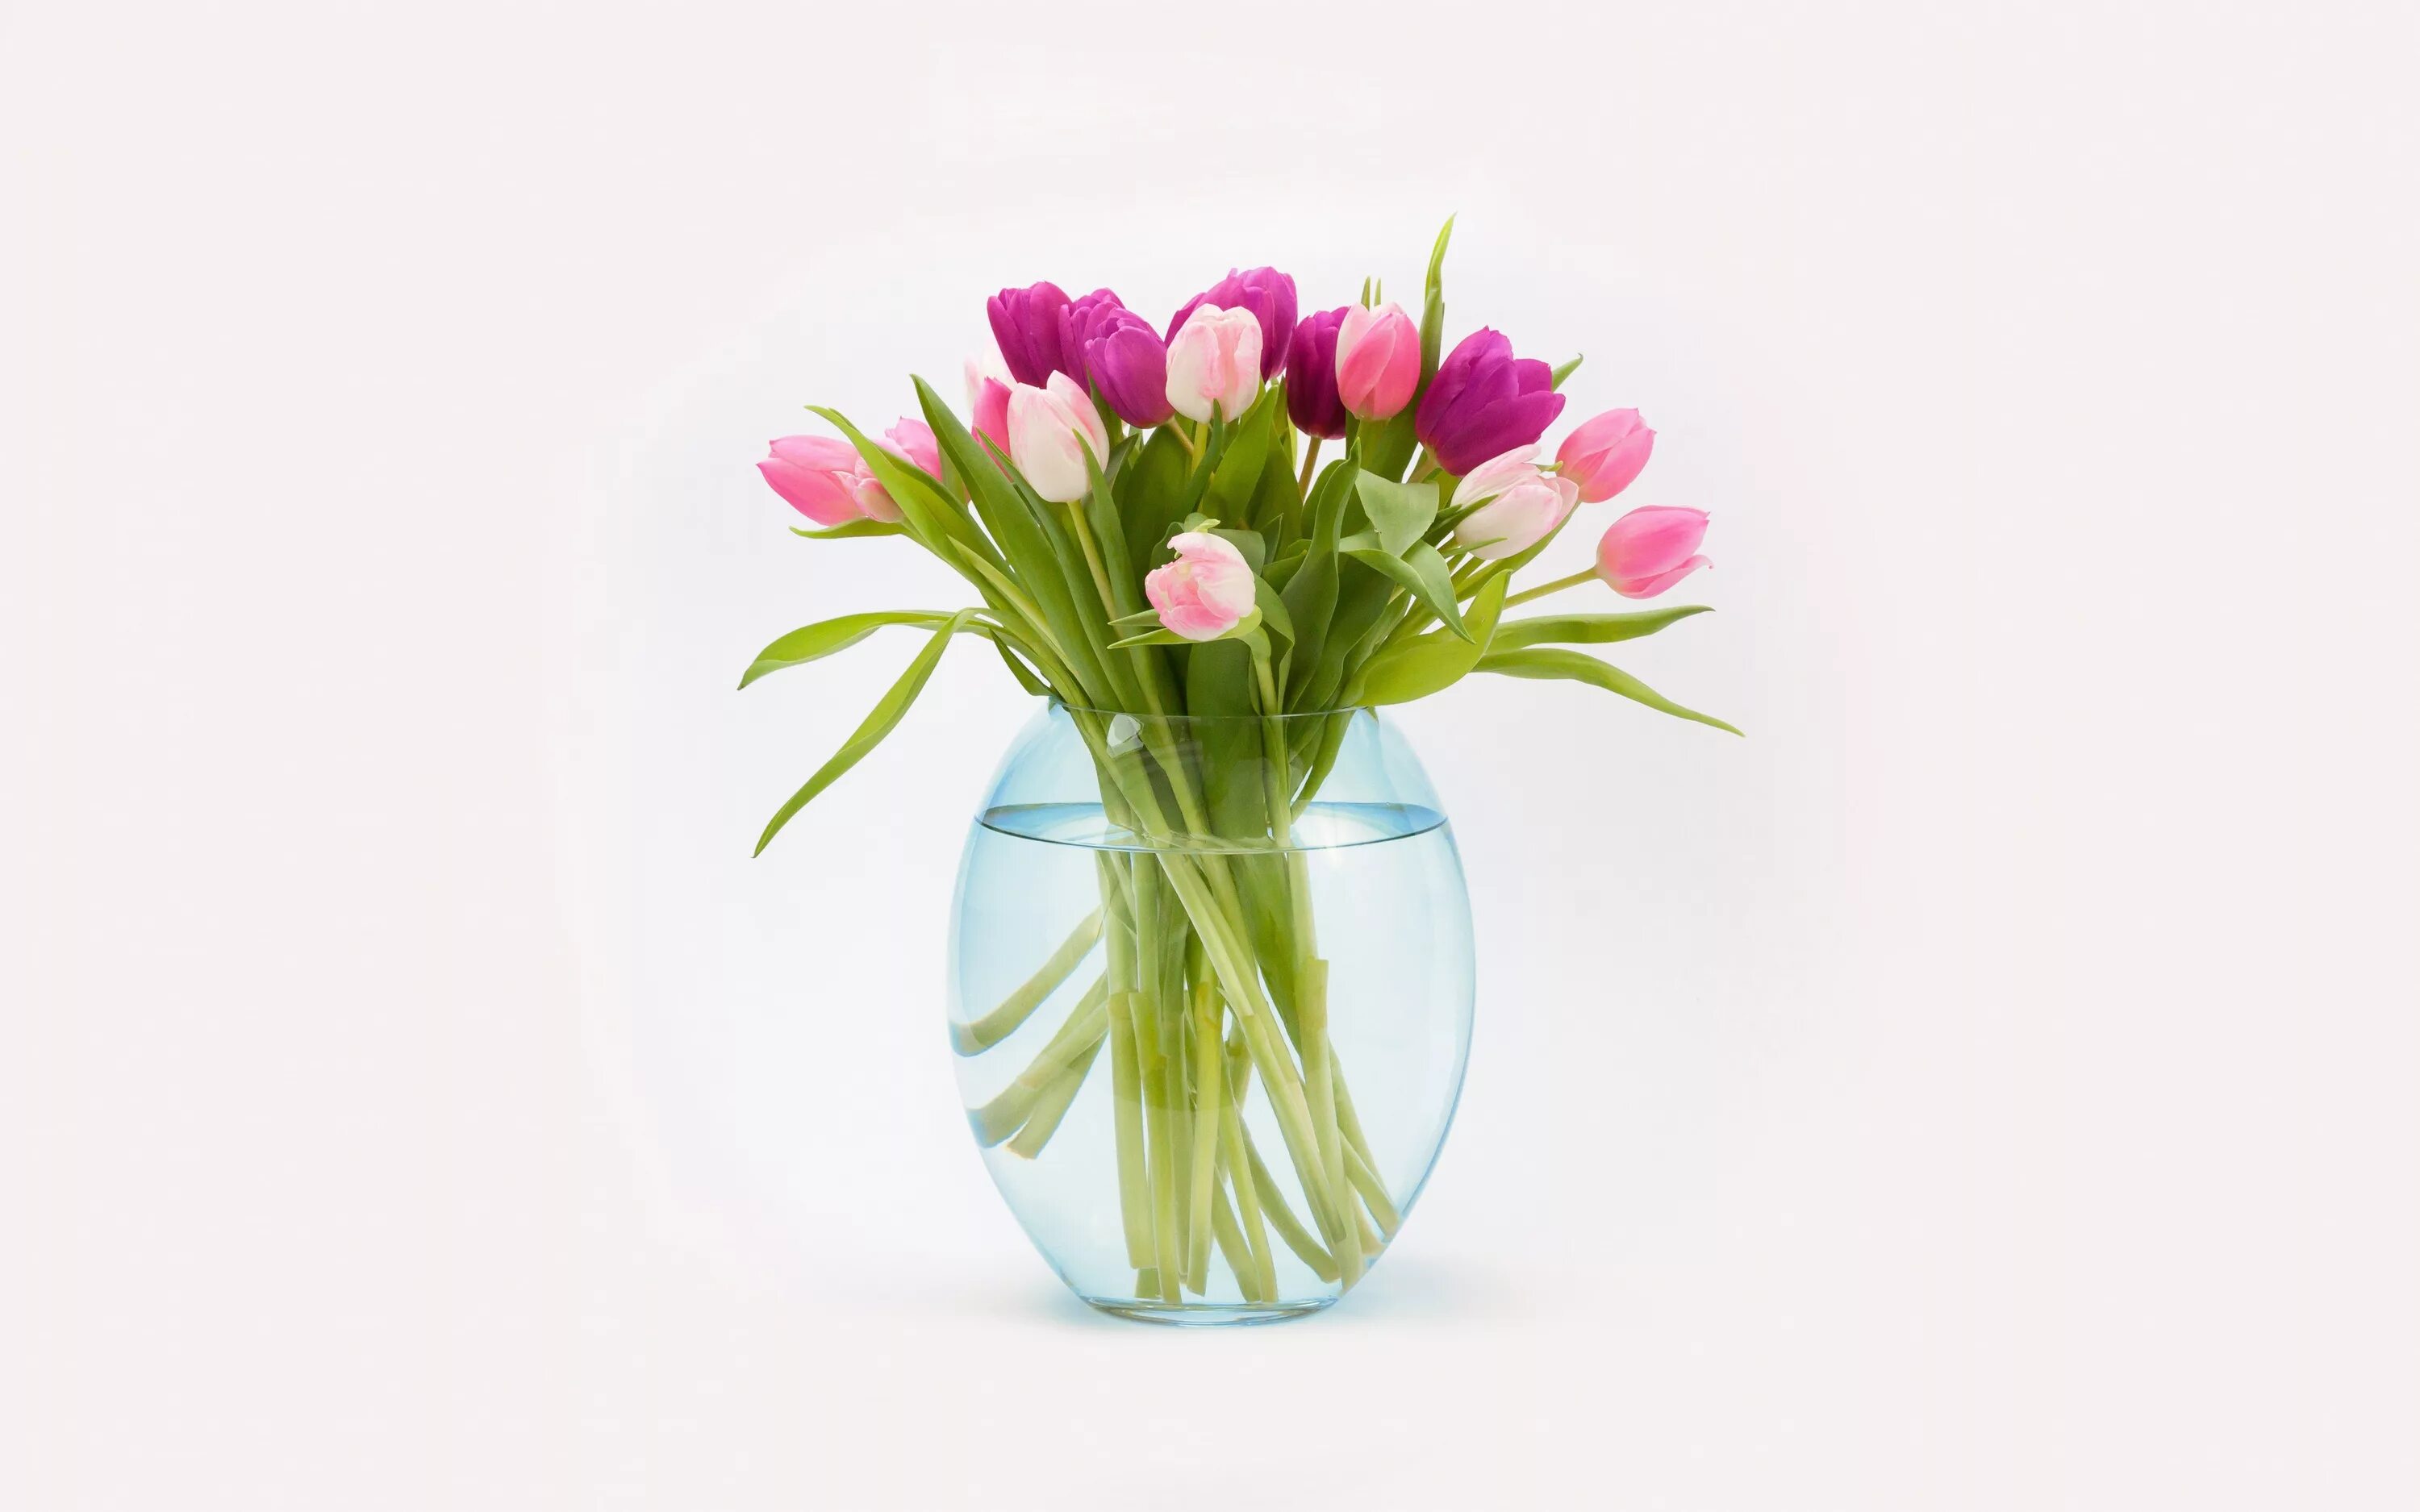 Цветы в прозрачной вазе. Букеты в вазах. Ваза с тюльпанами. Стильные весенние букеты. Розы и тюльпаны в одной вазе